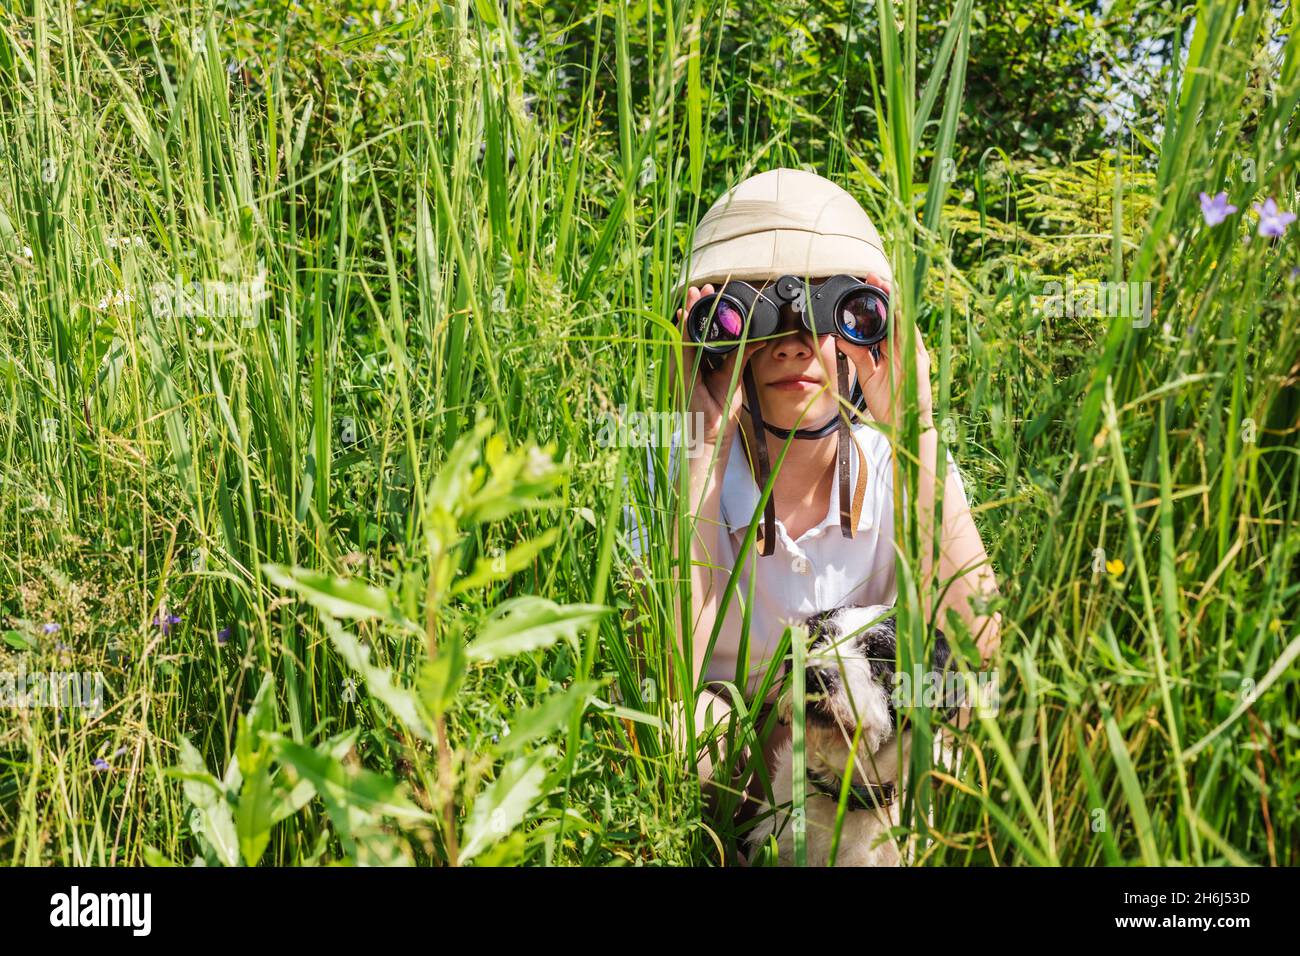 Preteen girl wearing cork helmet hiding in the grass with her dog looking through binoculars Stock Photo